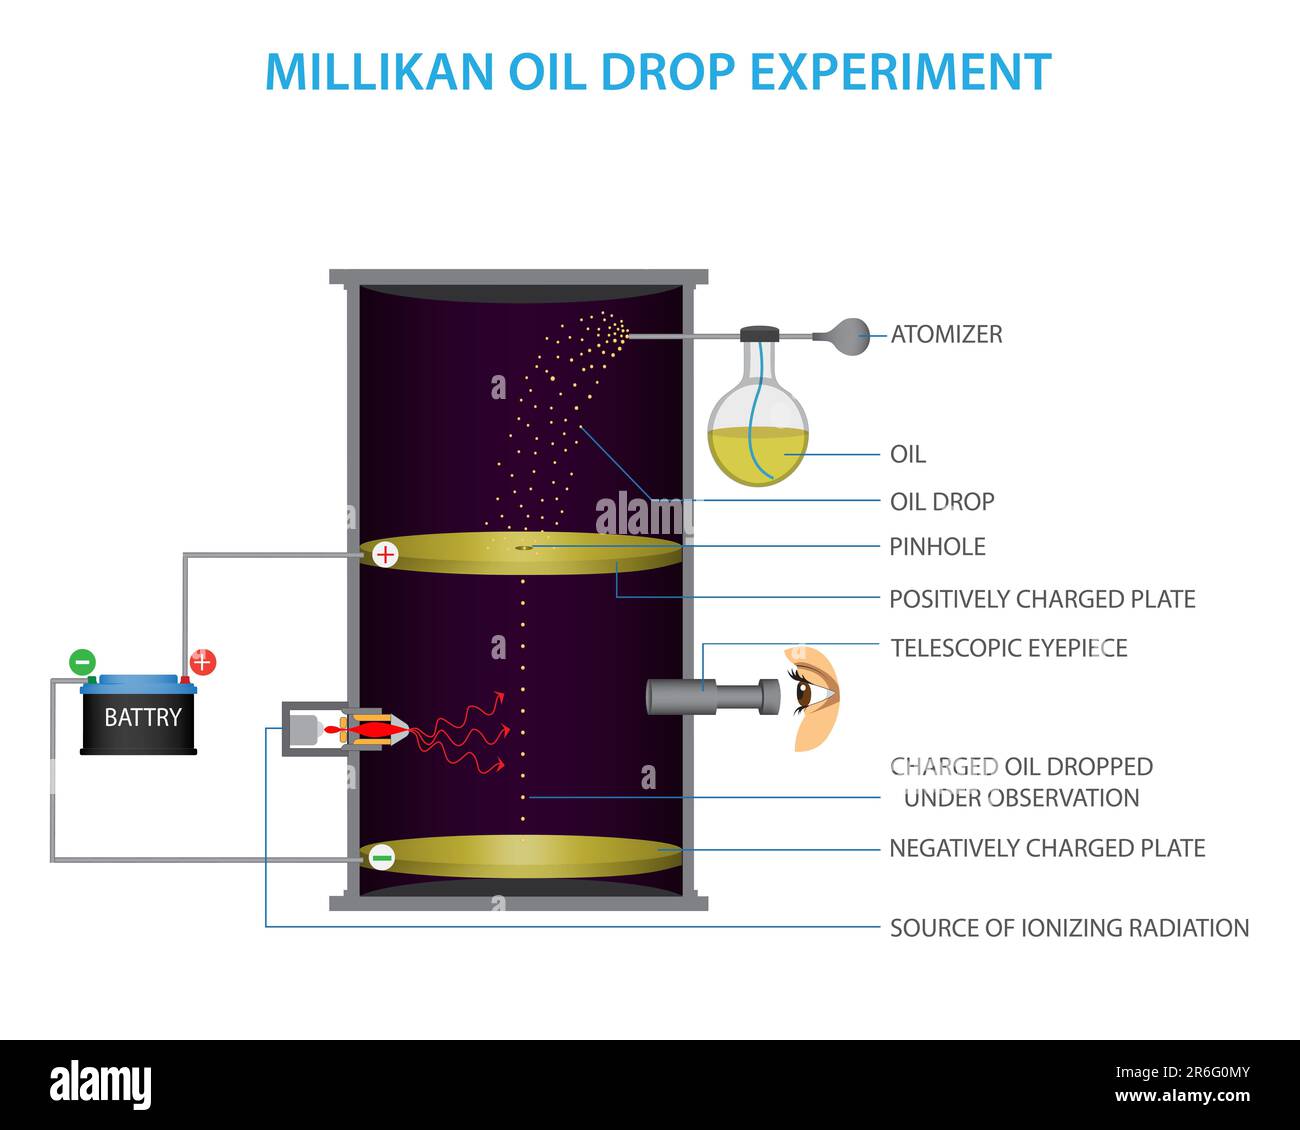 Millikan's Oil Drop Experiment